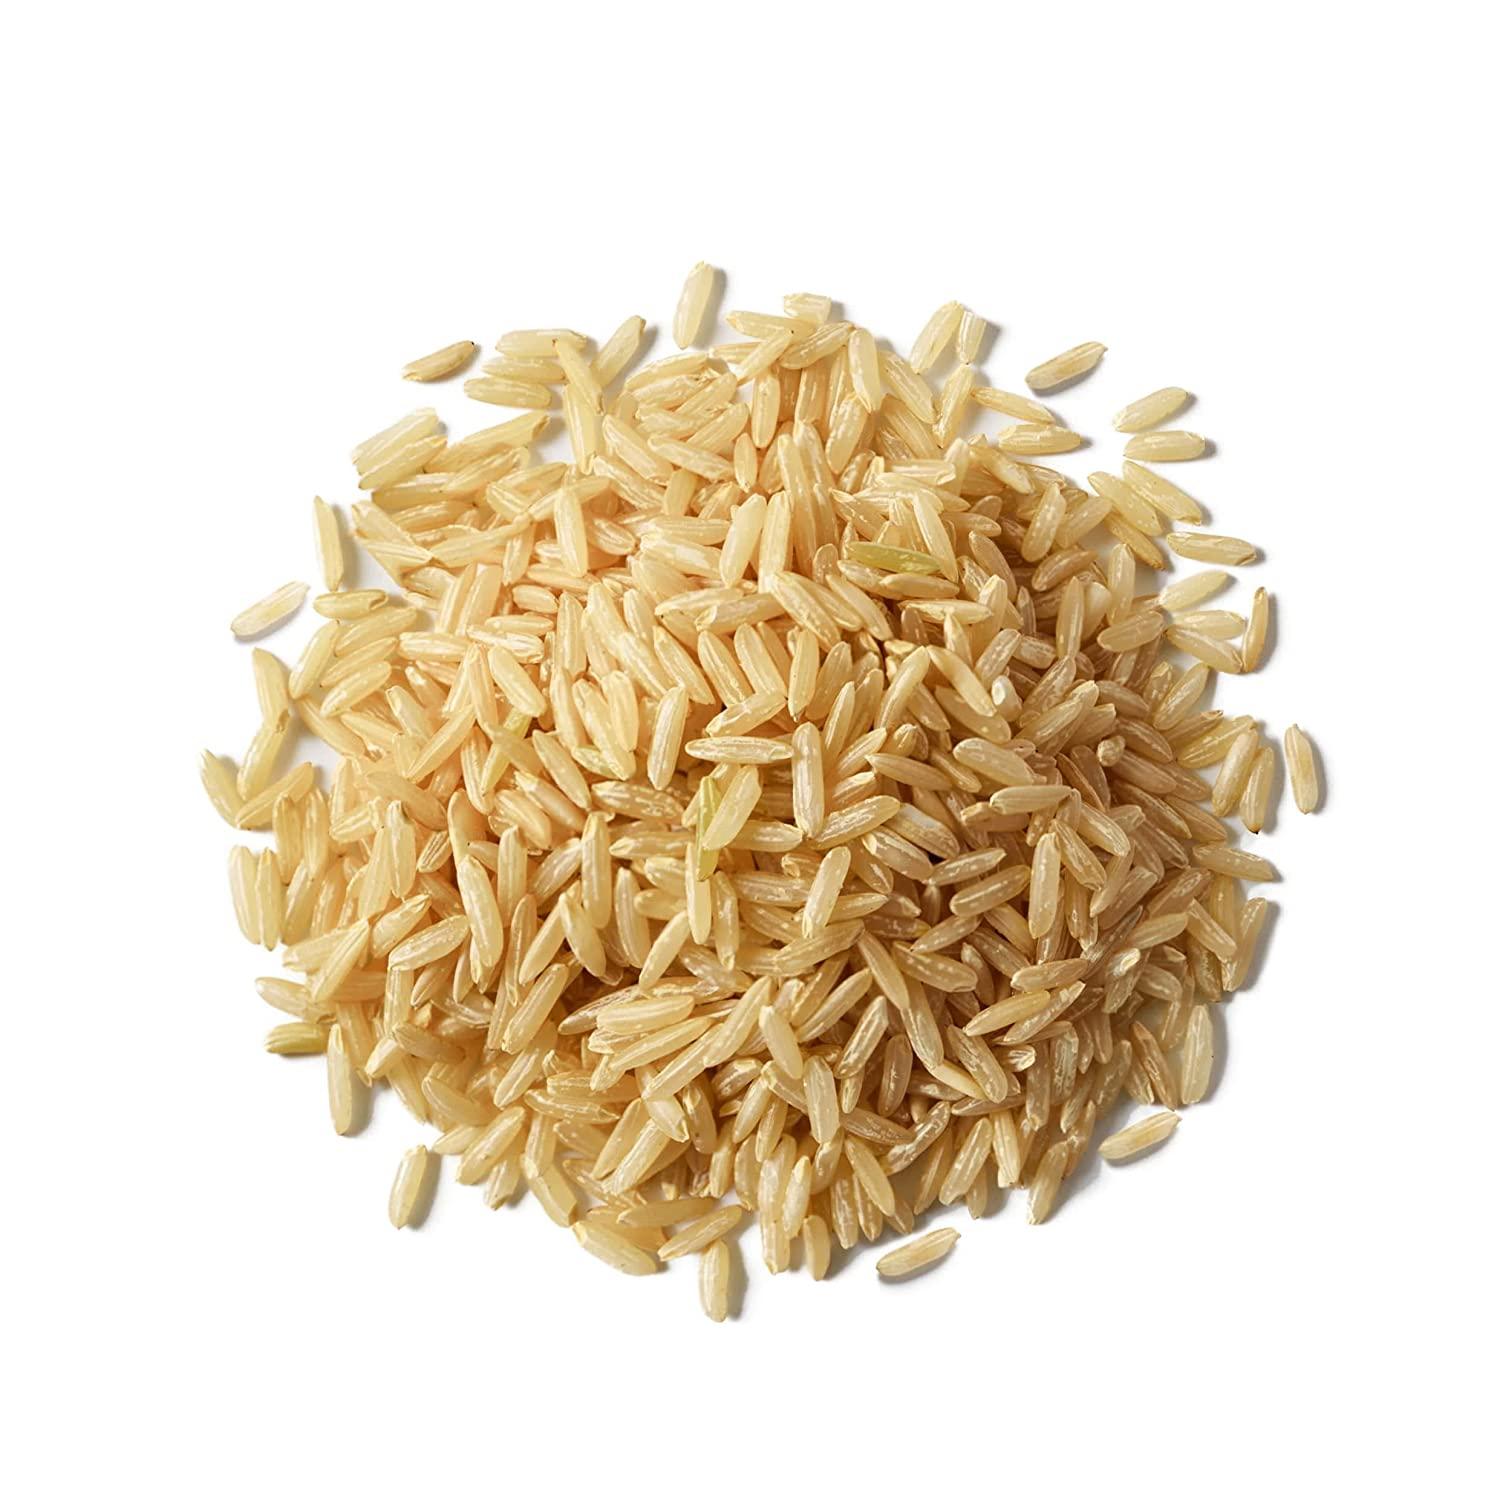 Instant Pot Brown Basmati Rice • The Incredible Bulks